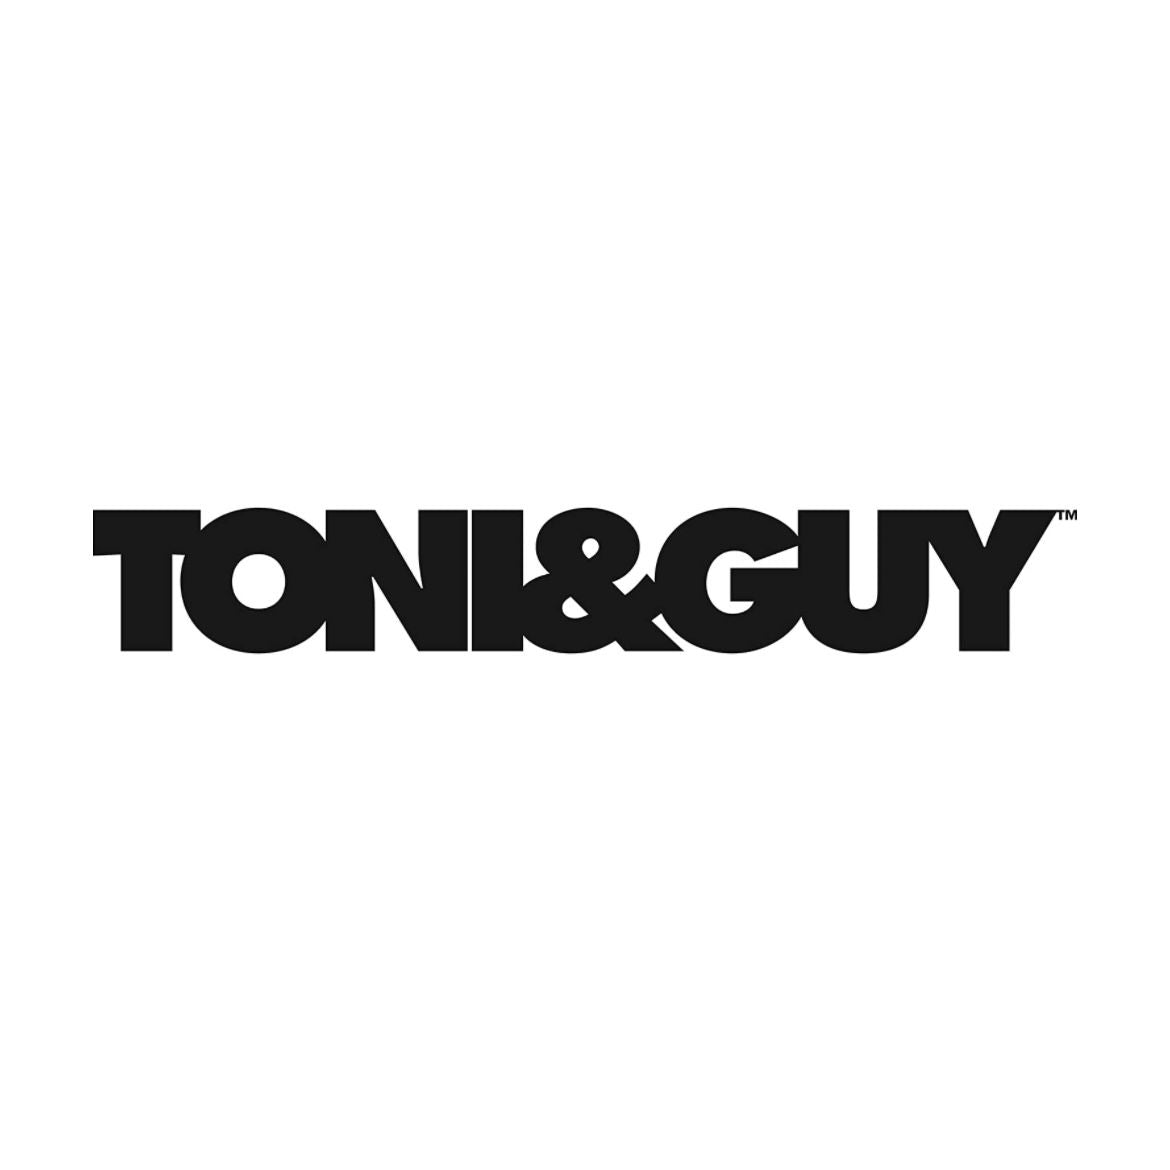 TONY & GUY - VOLUME ADDICTION SHAMPOO 250ml